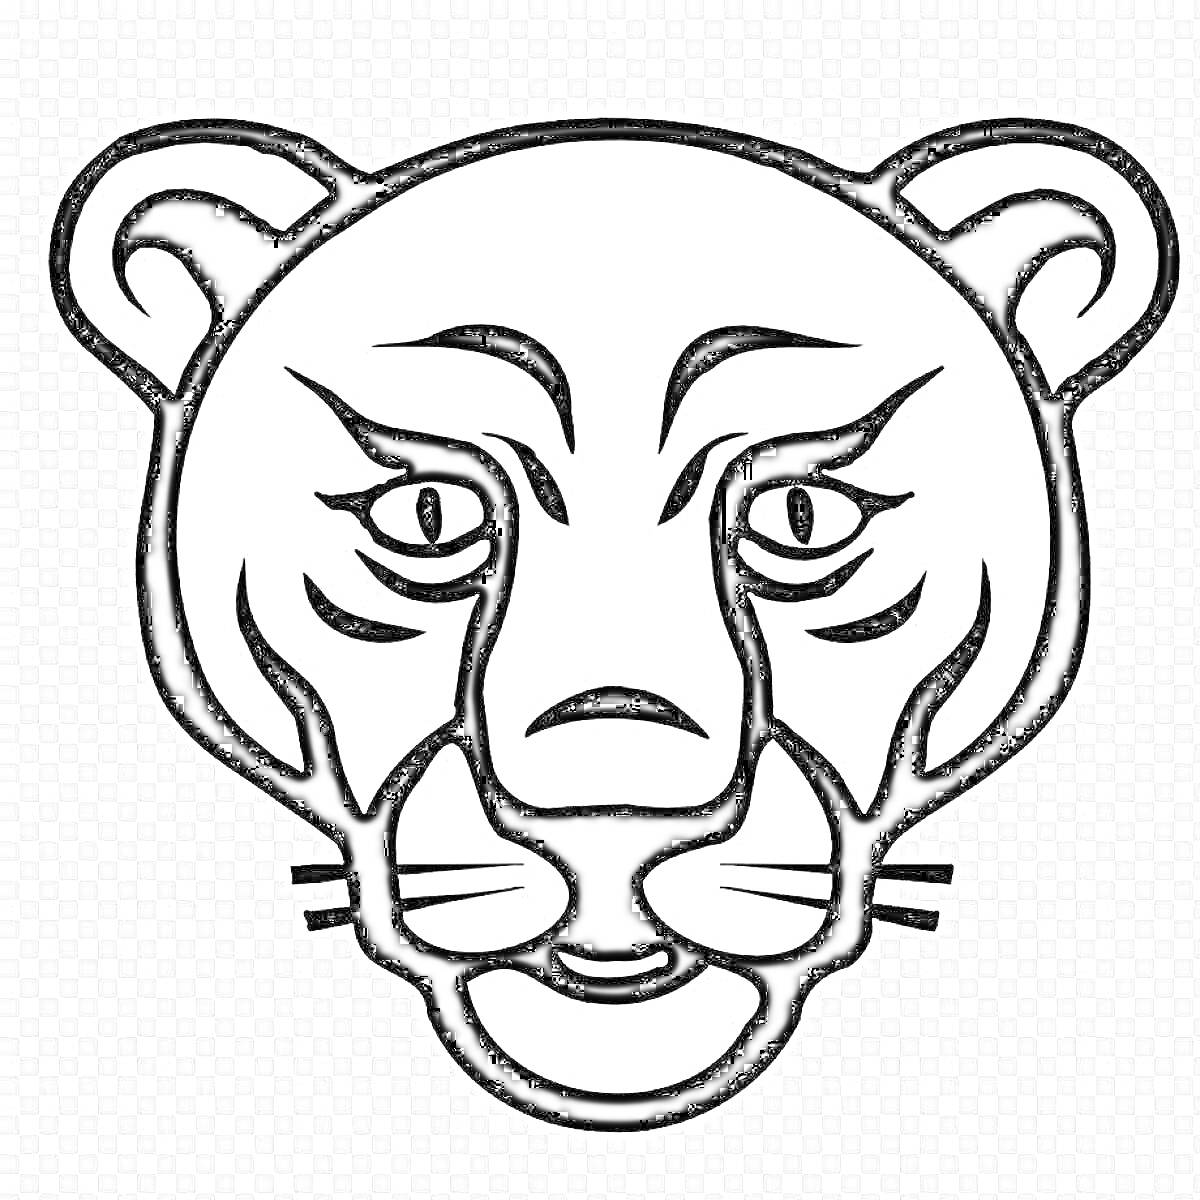 Раскраска Раскраска с изображением морды льва с ушами, глазами, носом и усами